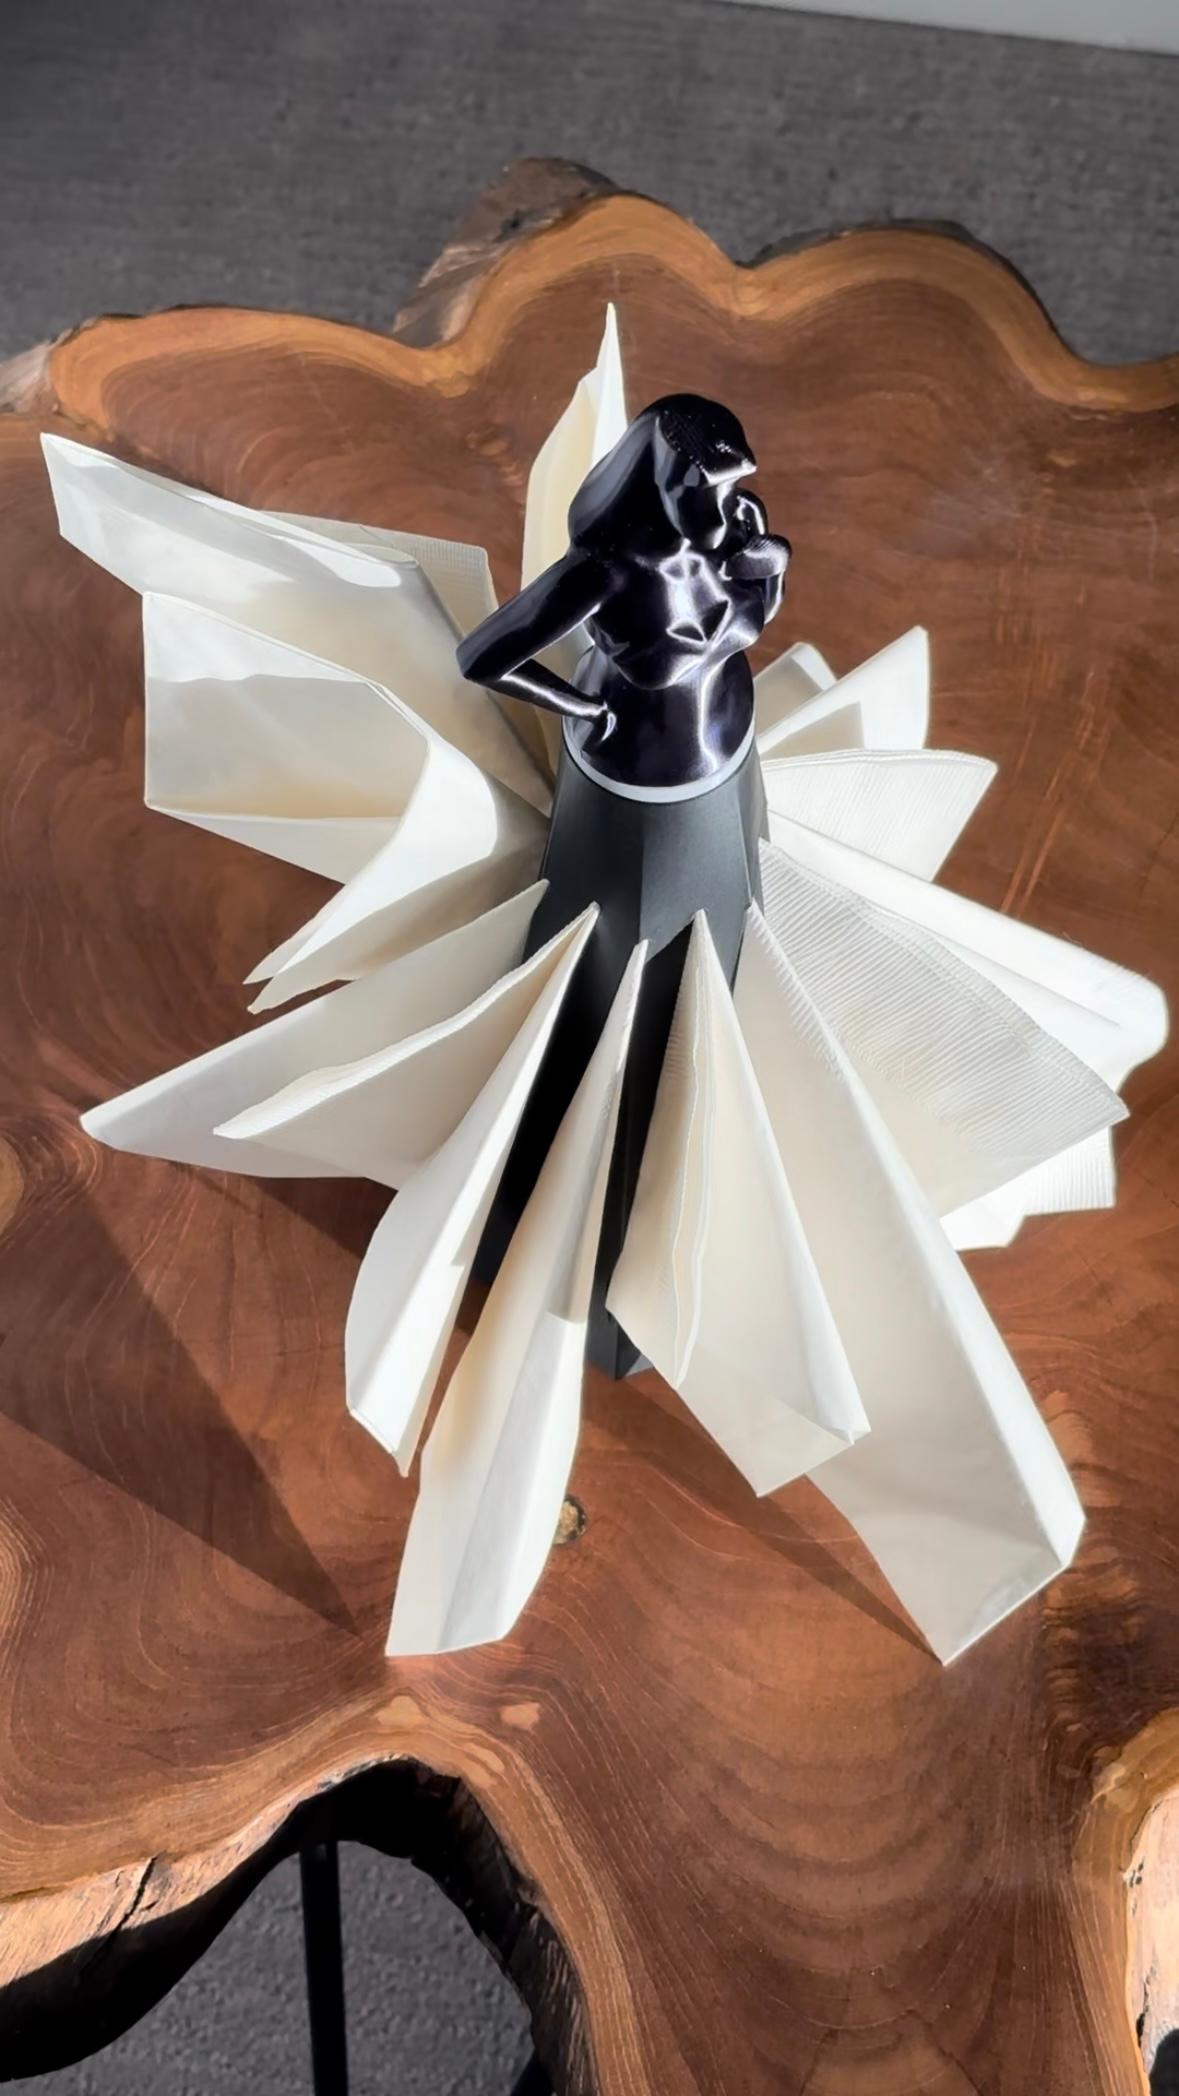 Napkin Holder Figure in Dress 3d model